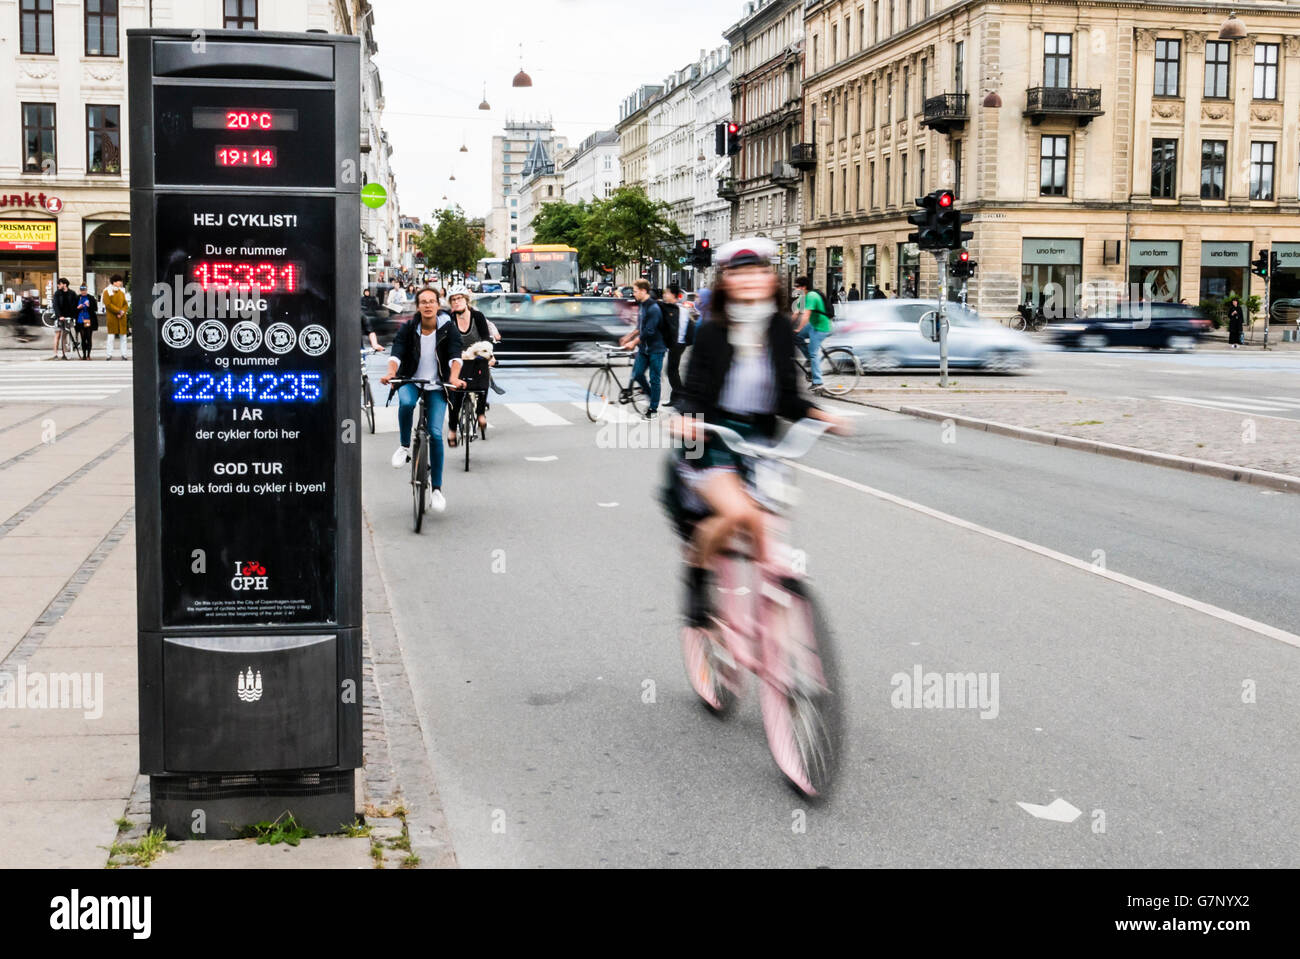 Les cyclistes à Copenhague, Danemark, cycle passé un signe qui counds le nombre de coureurs par jour/année passé ce point. Banque D'Images